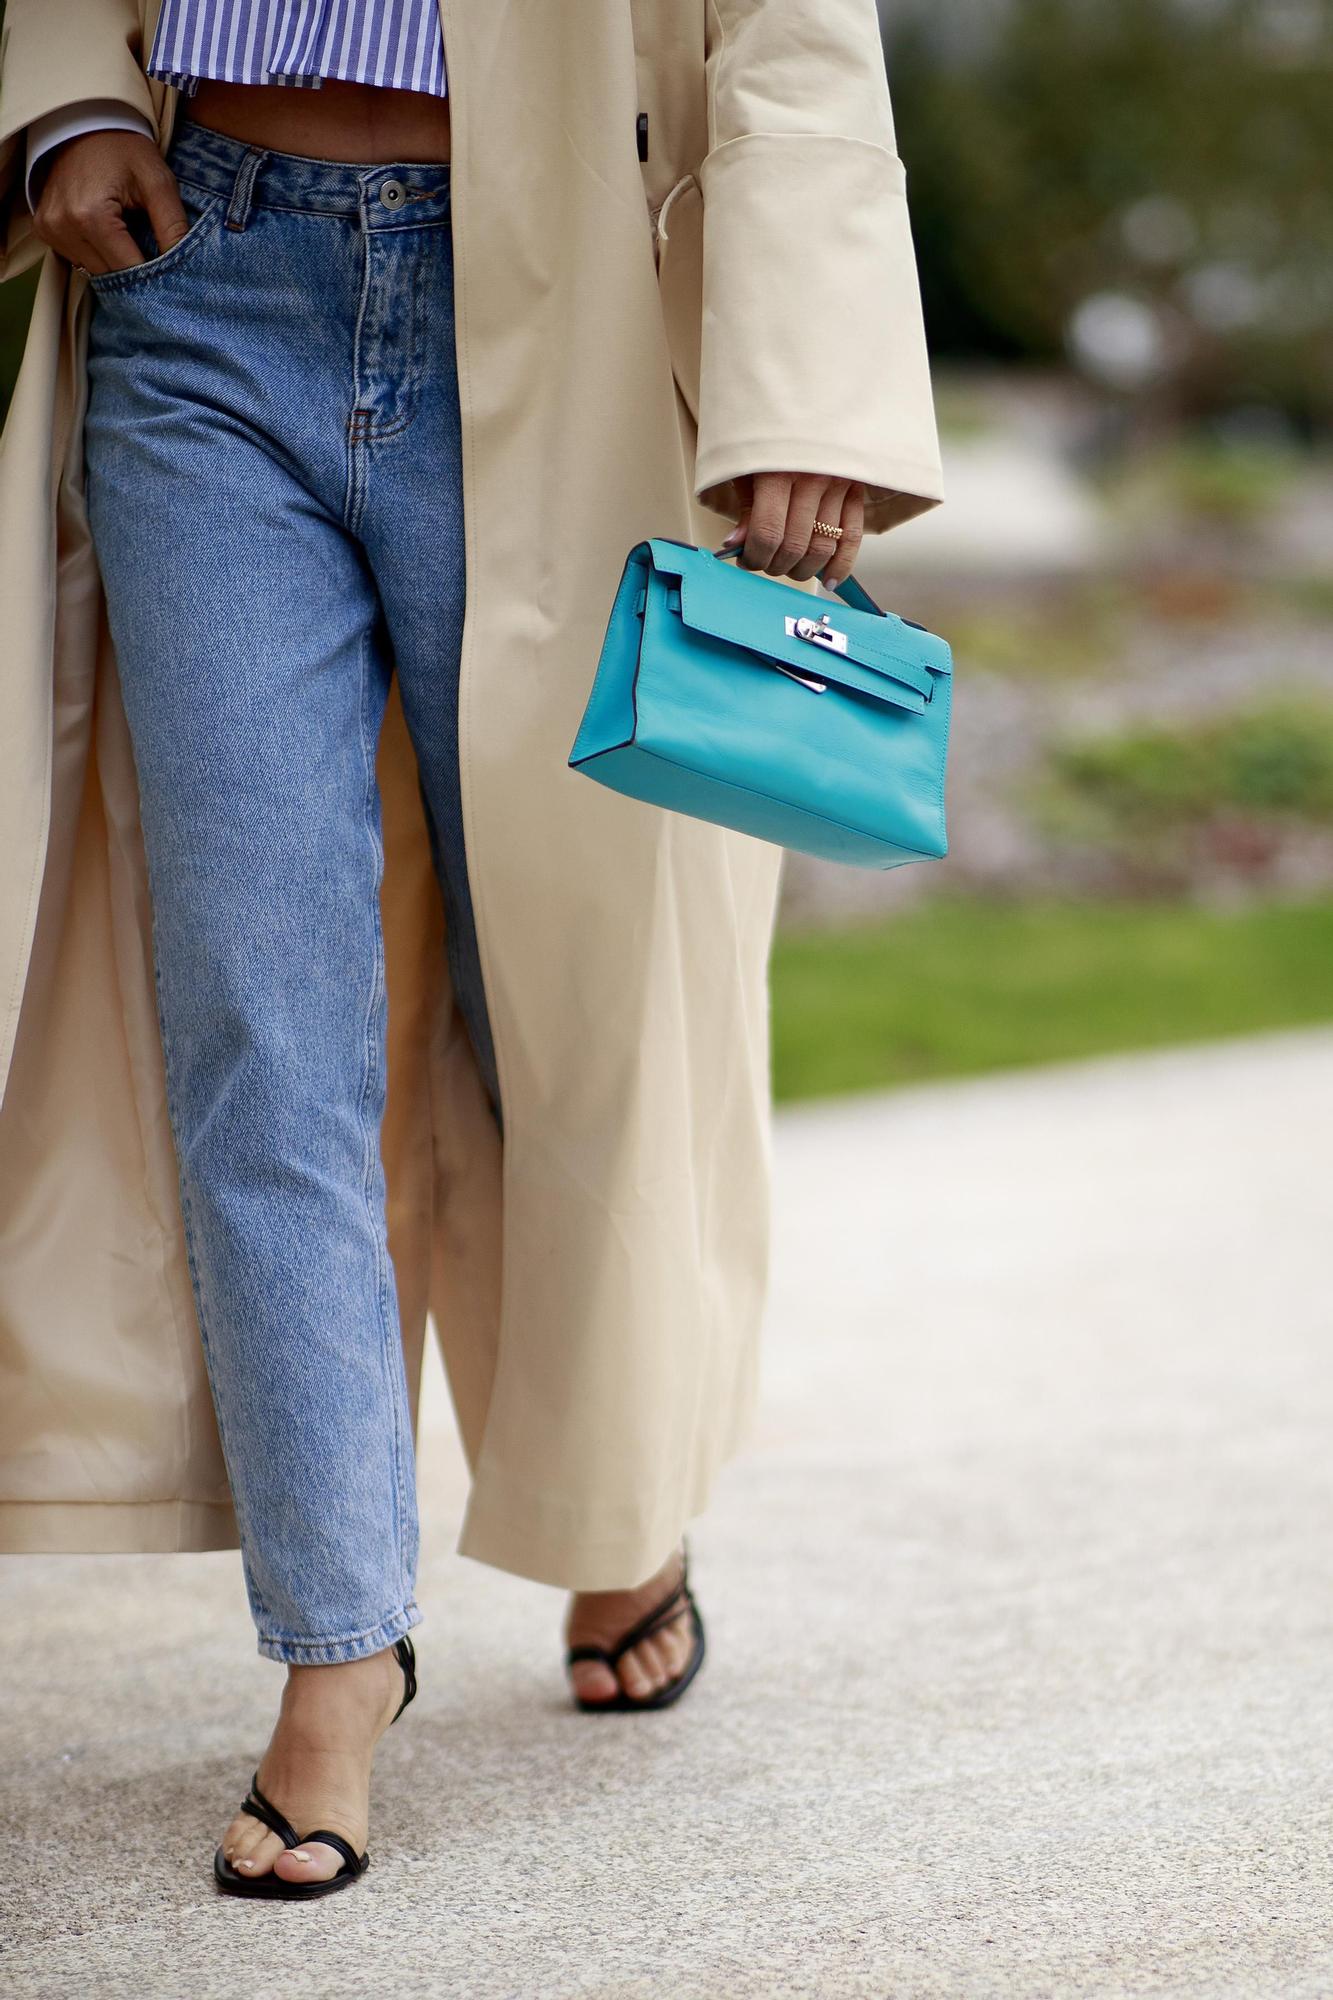 PANTALONES VAQUEROS | Los jeans de mujer que serán tendencia la próxima  temporada según Chanel